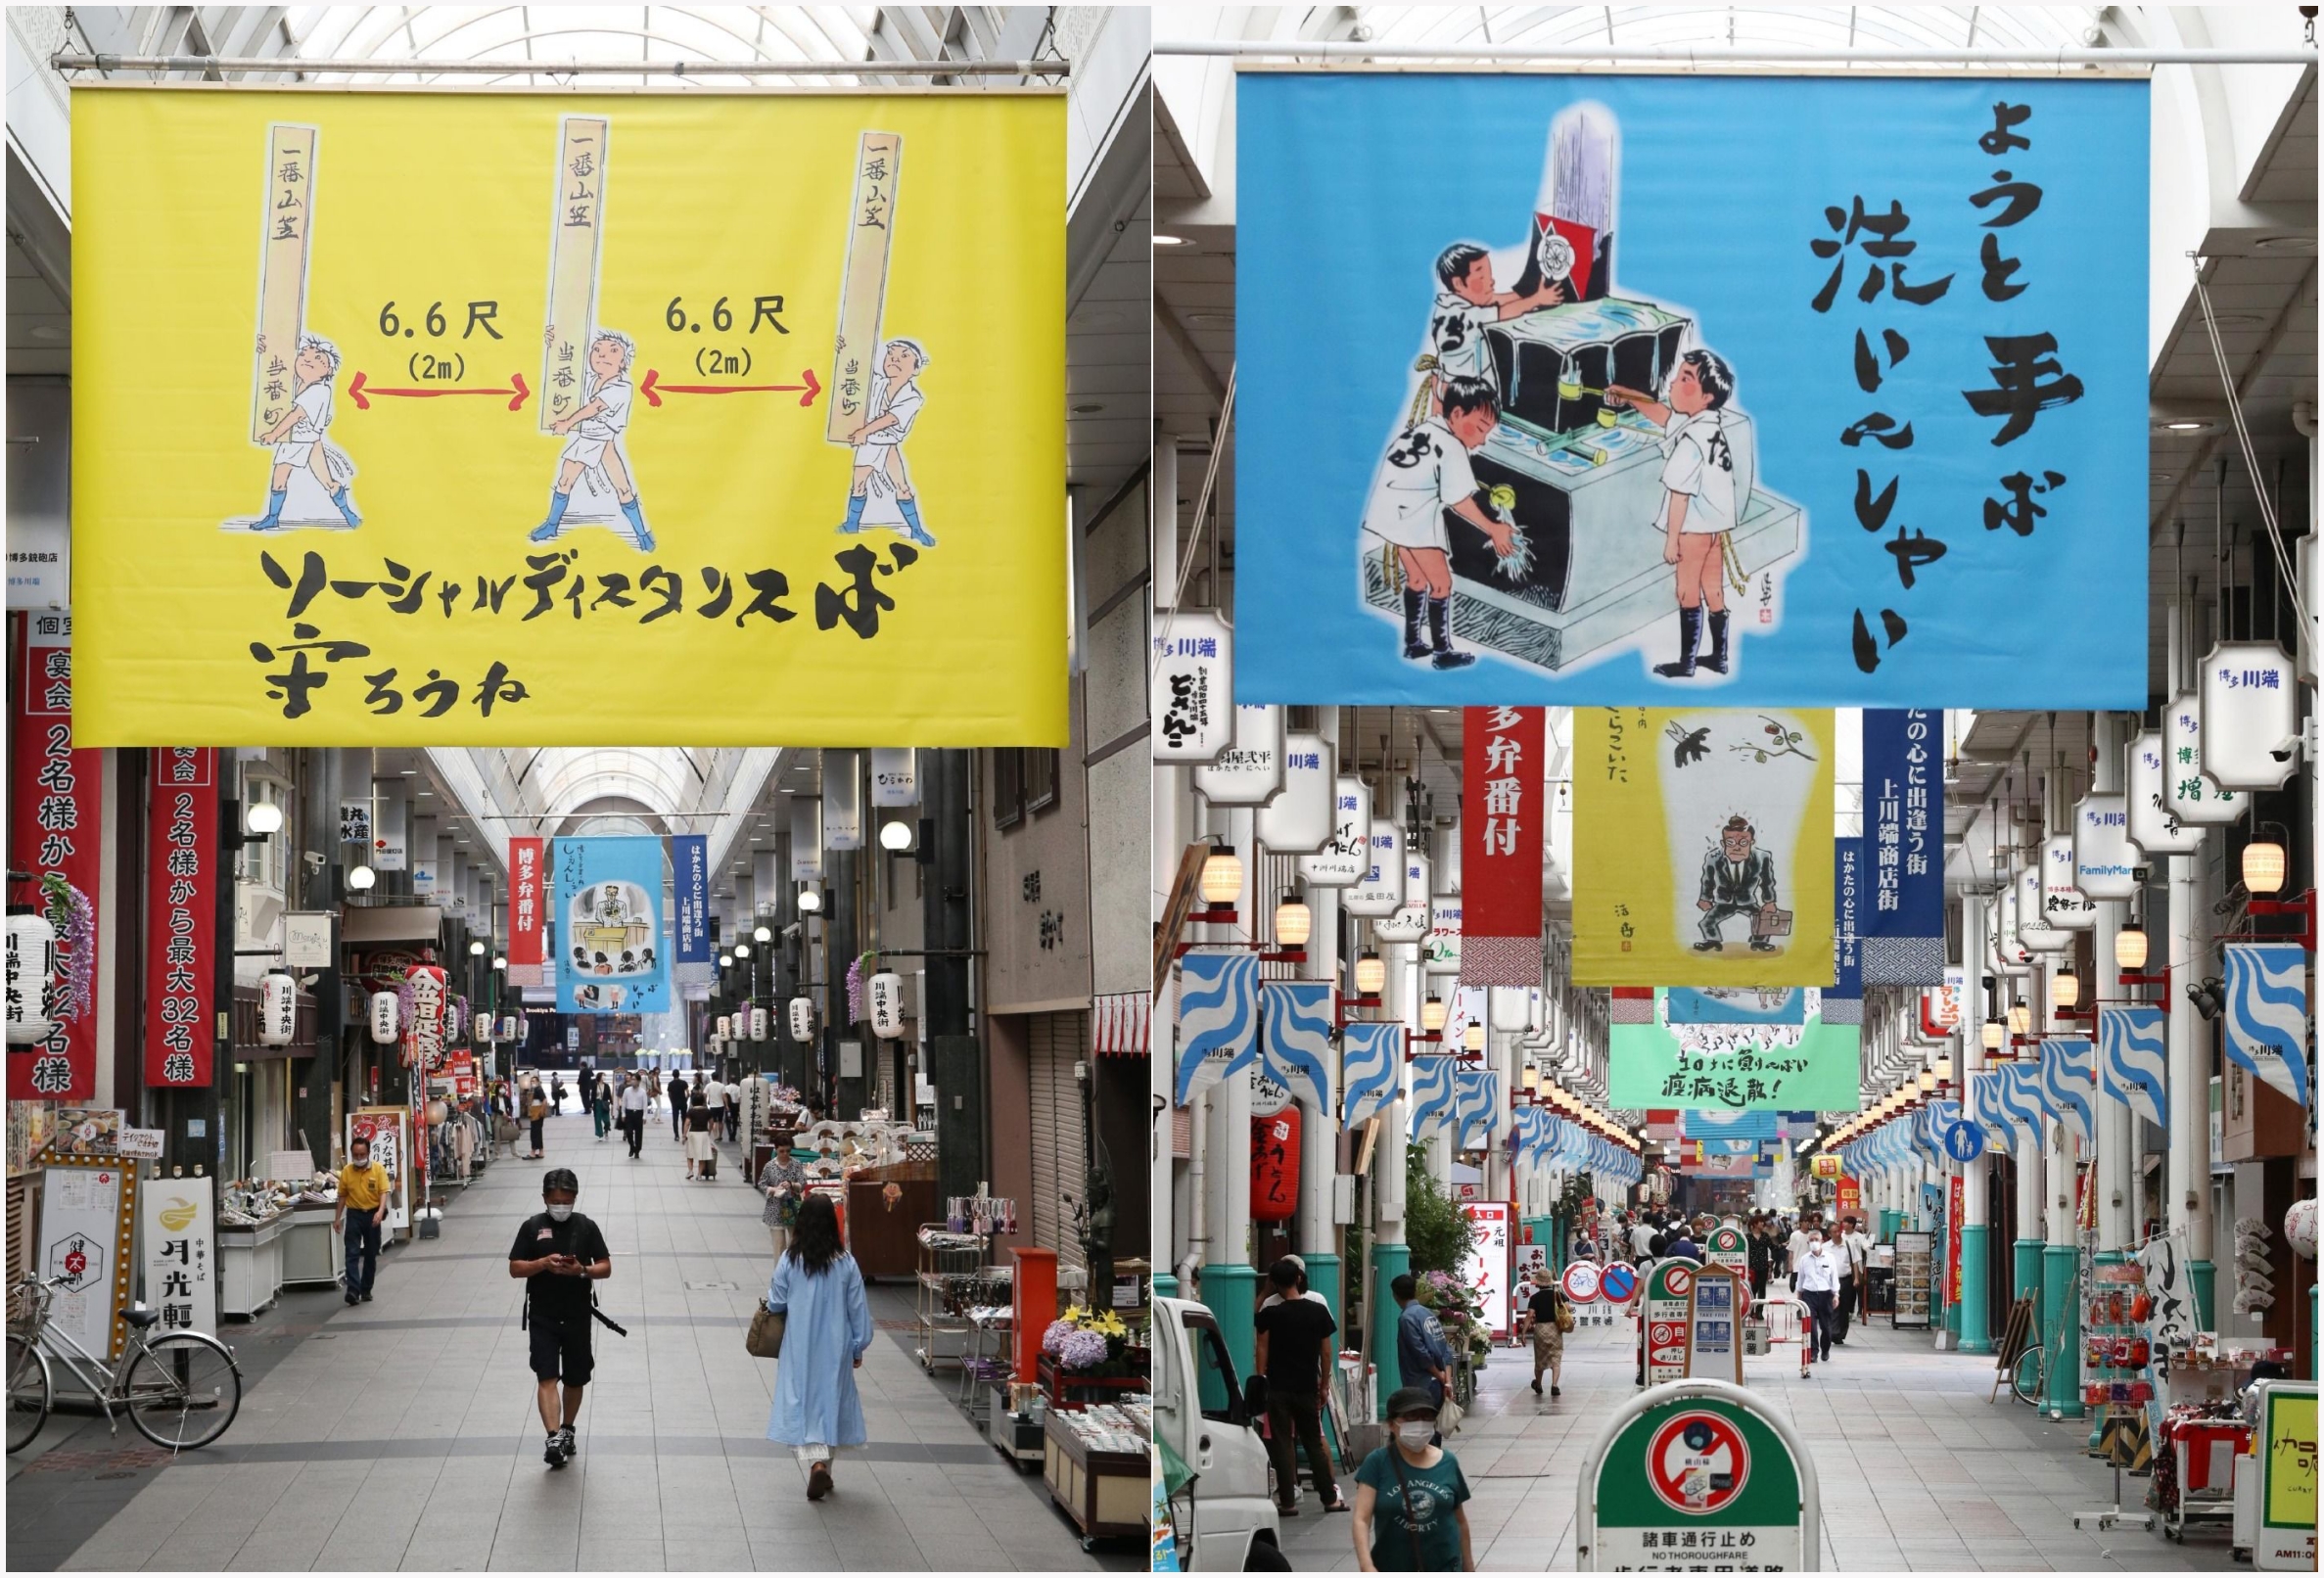 후쿠오카의 한 상점가 풍경. 일본 전통의 마츠리를 모티브로 6.6척의 거리 두기, 손씻기를 독려하고 있어요.